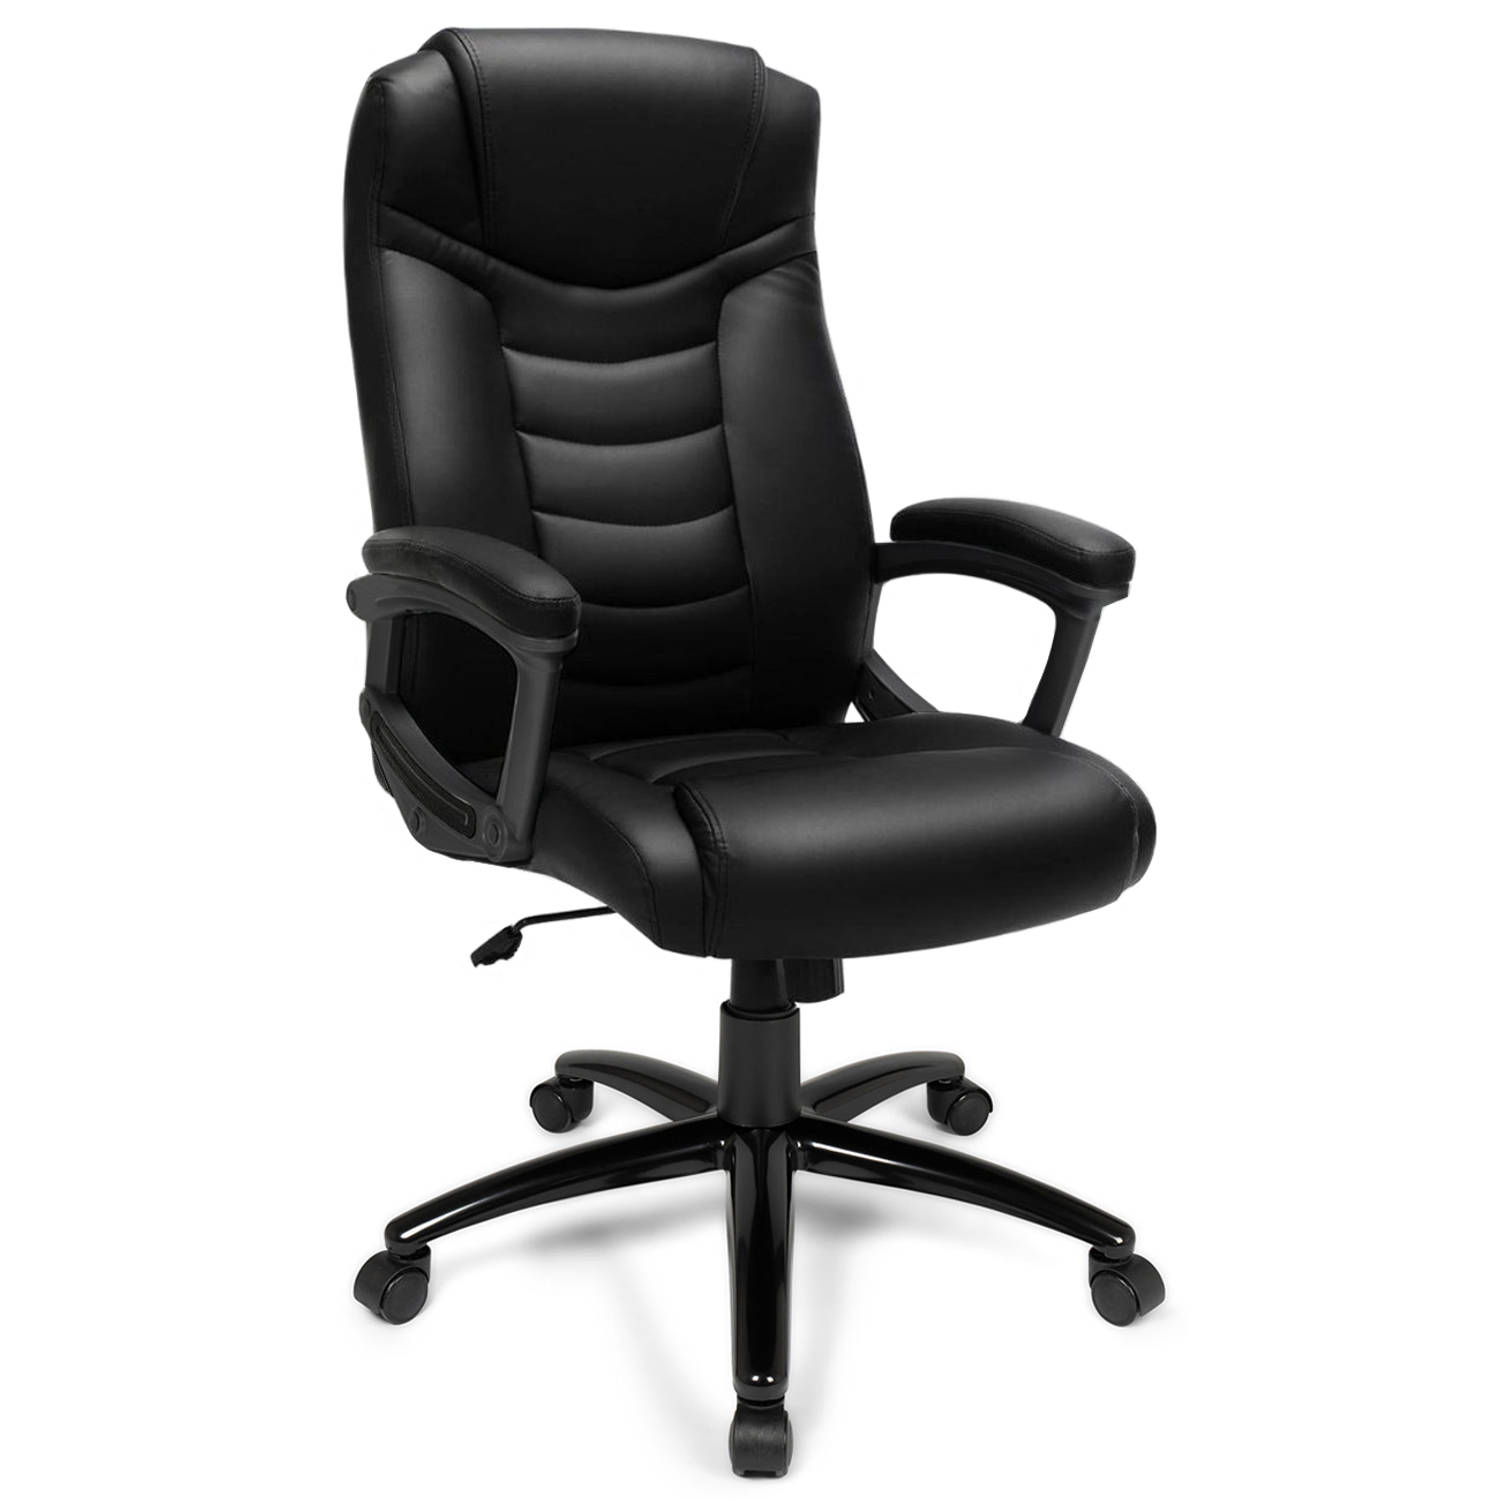 Ergodu luxe design bureaustoel met hoog zitcomfort